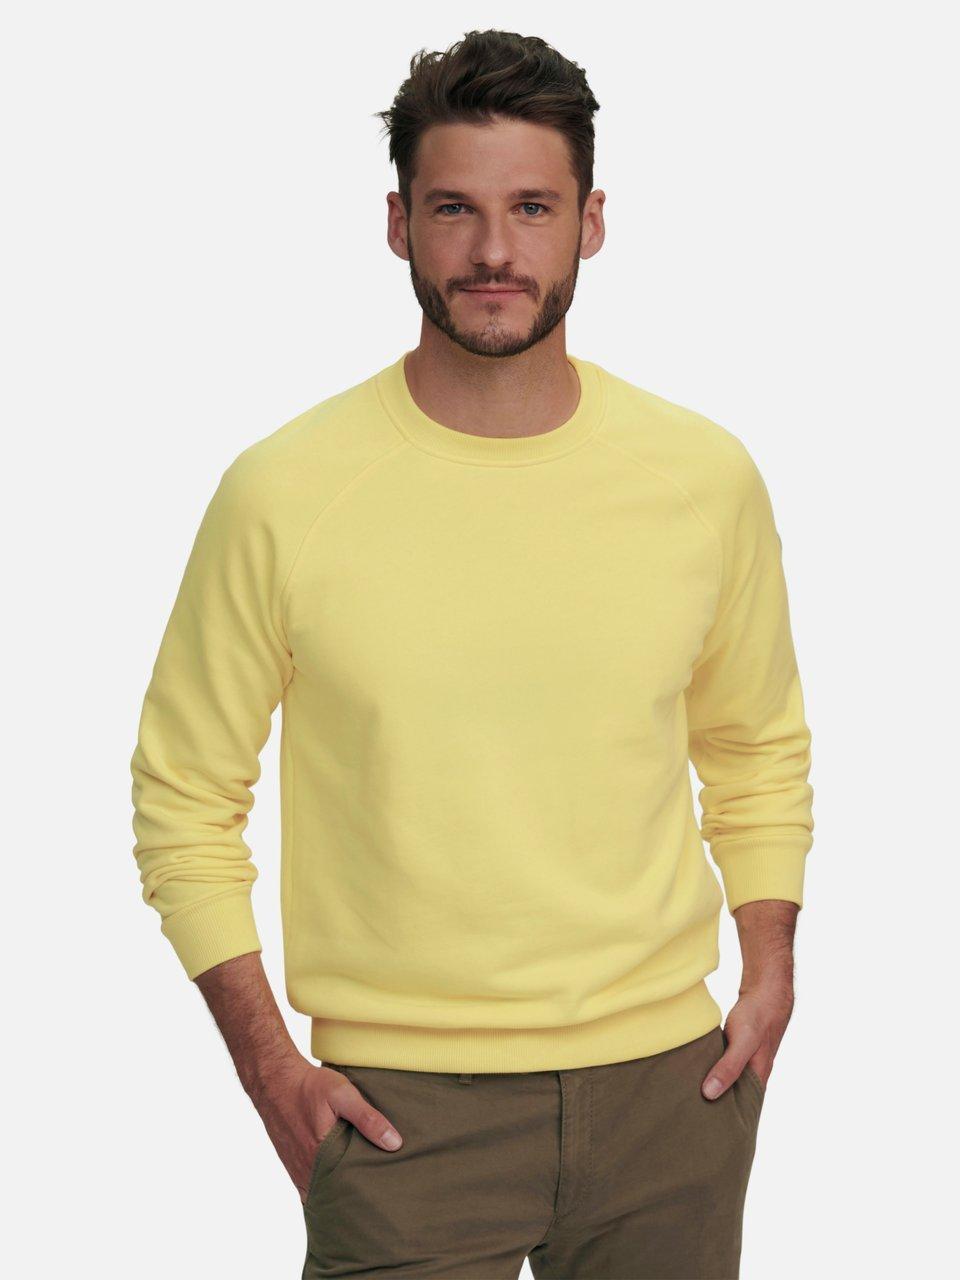 Louis Sayn - Sweatshirt van 100% katoen met raglanmouwen